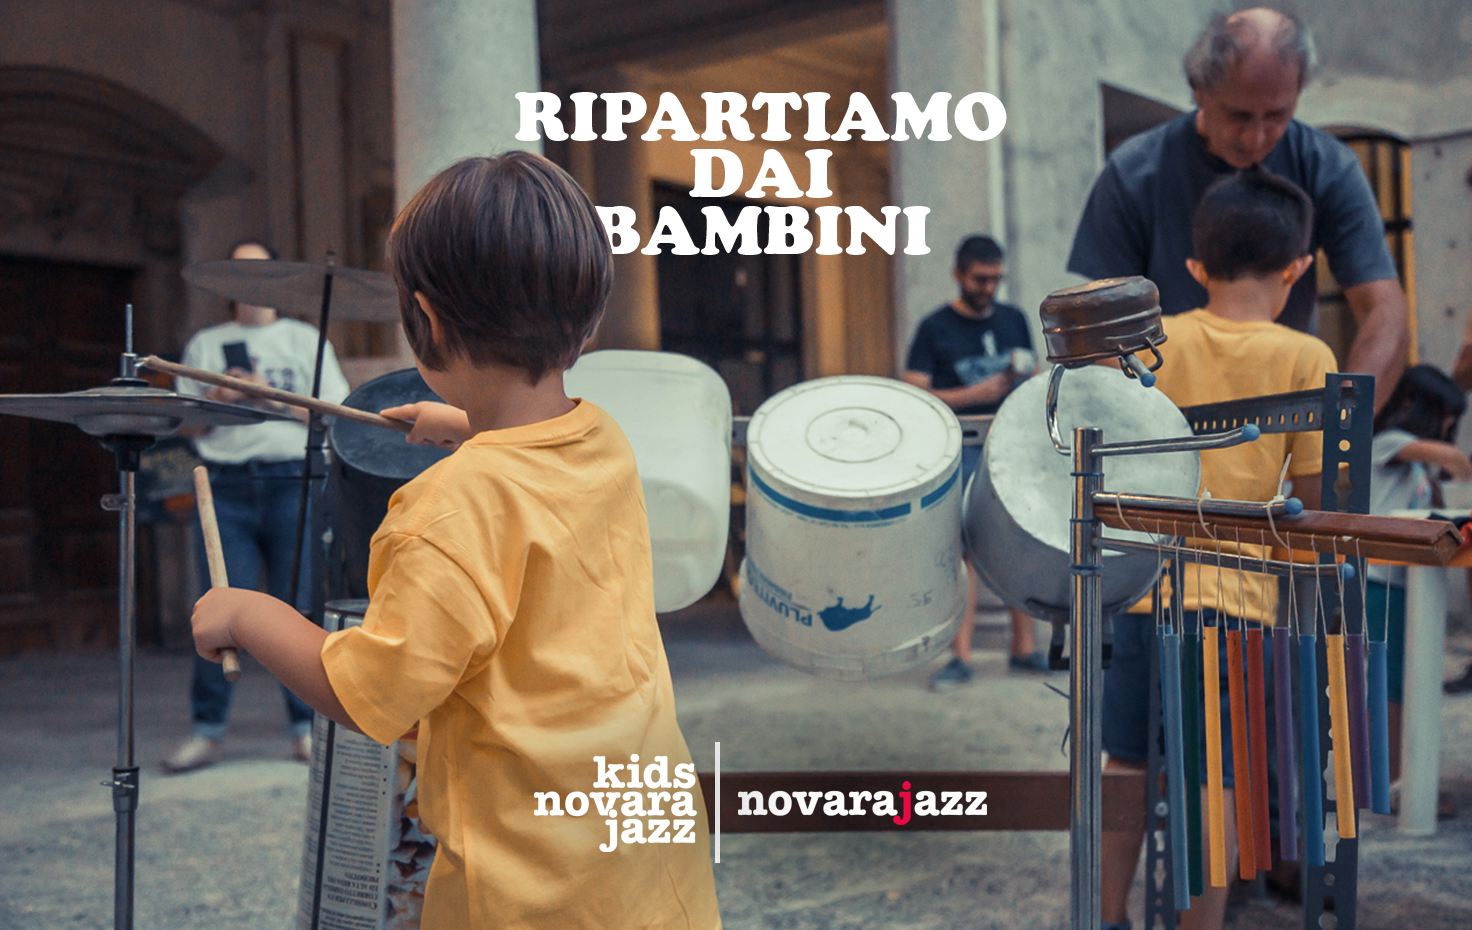 Kids Novara Jazz: Ripartiamo dai bambini